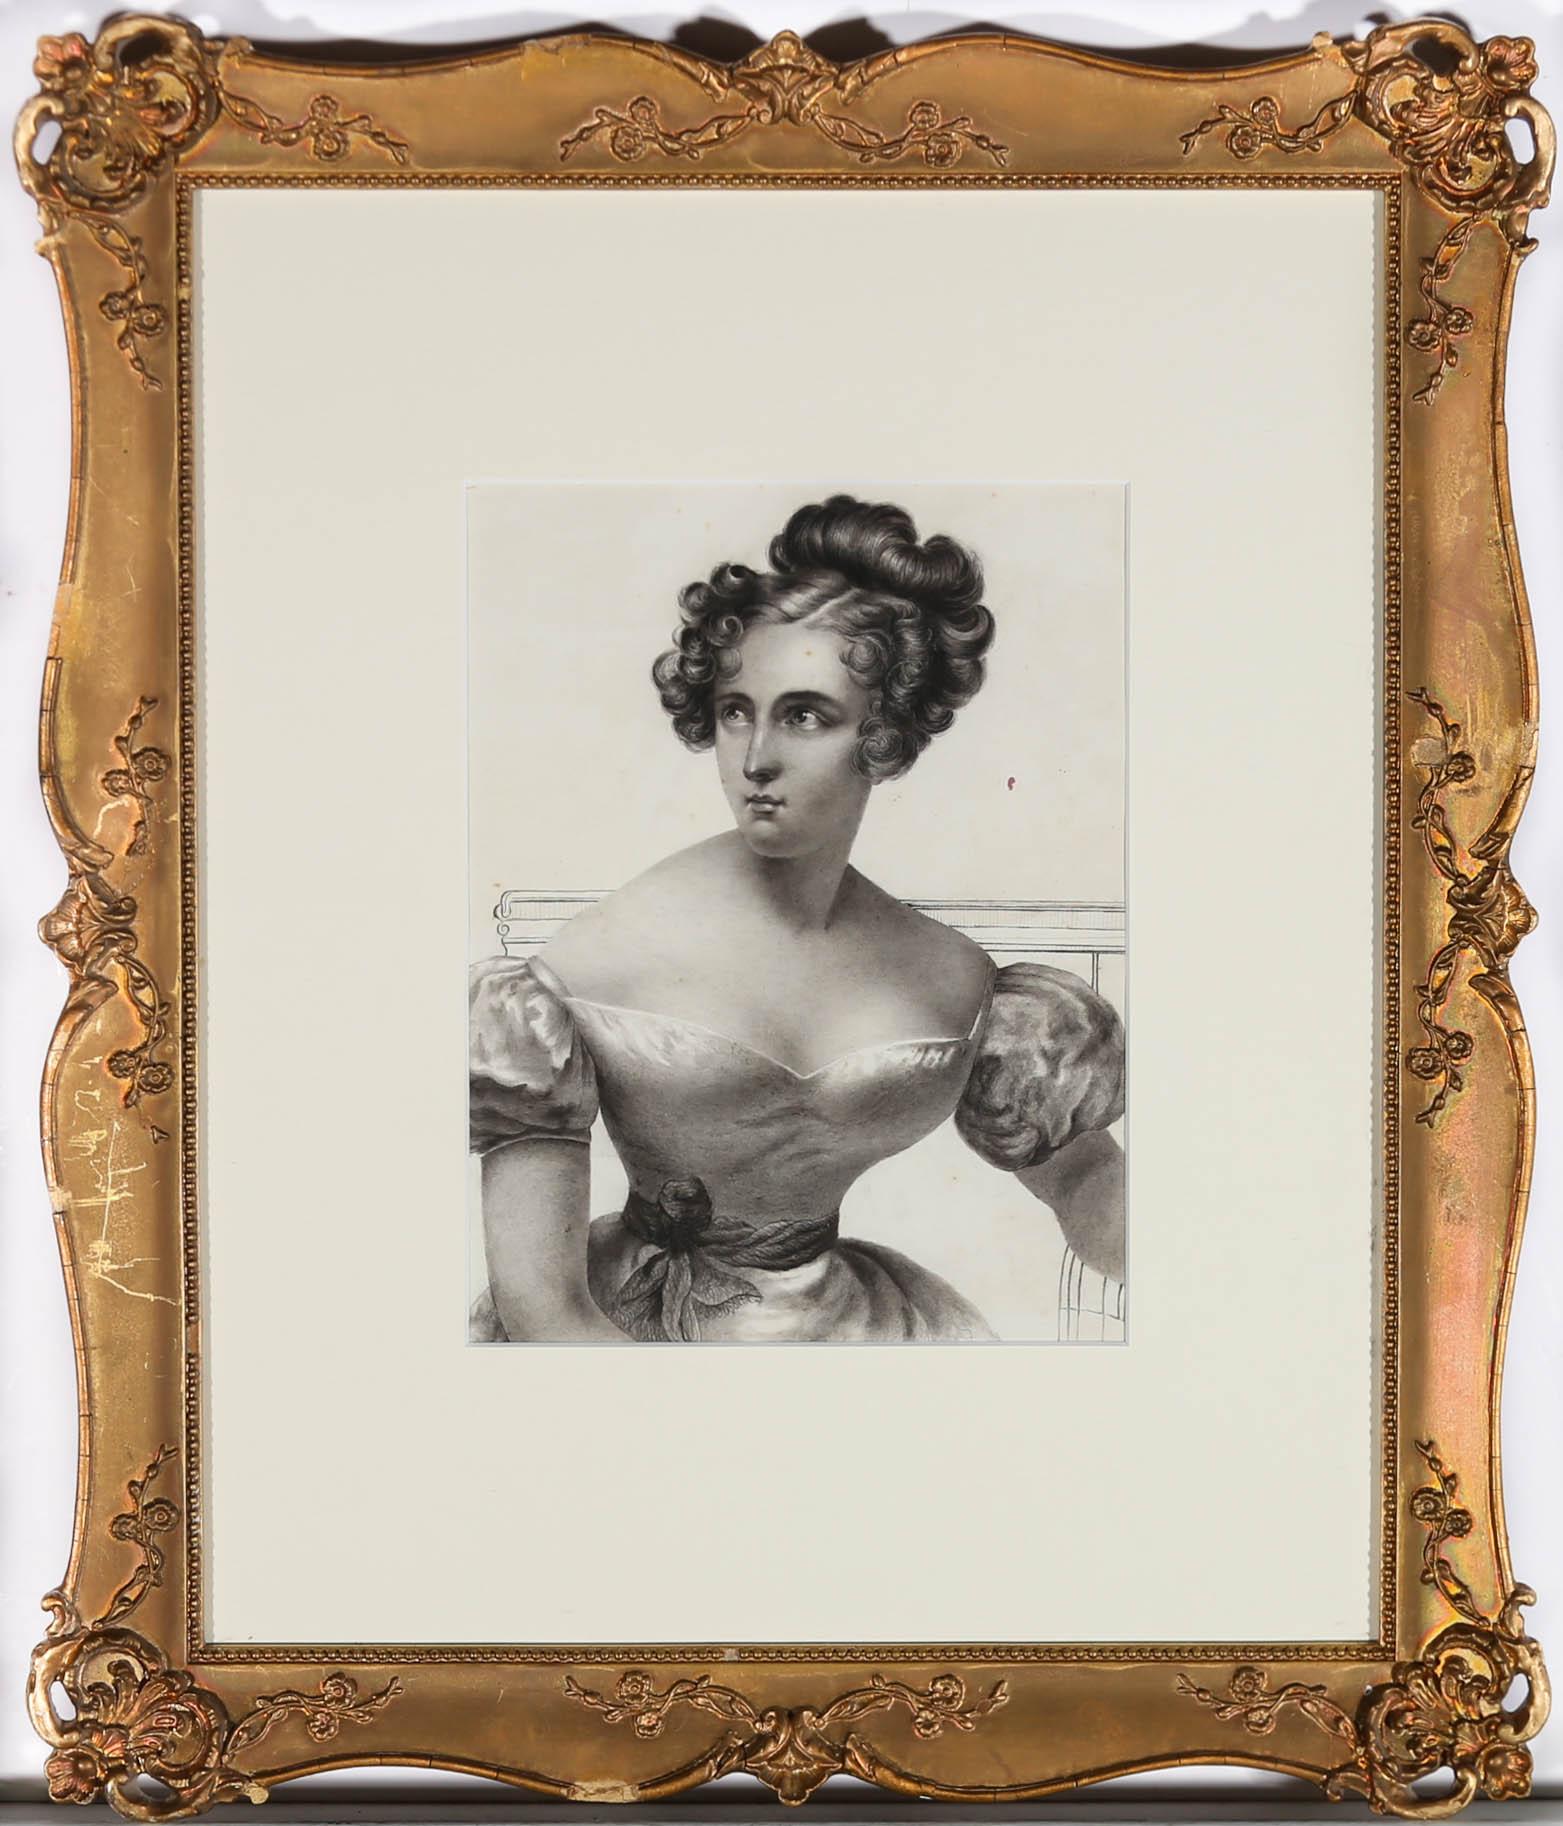 Remarquable portrait au fusain du début du 19e siècle, représentant une élégante jeune femme. Sa robe et le style de ses cheveux permettent de dater ce portrait vers 1830. Ses épaules douces et inclinées et ses petits traits de chérubin sont des